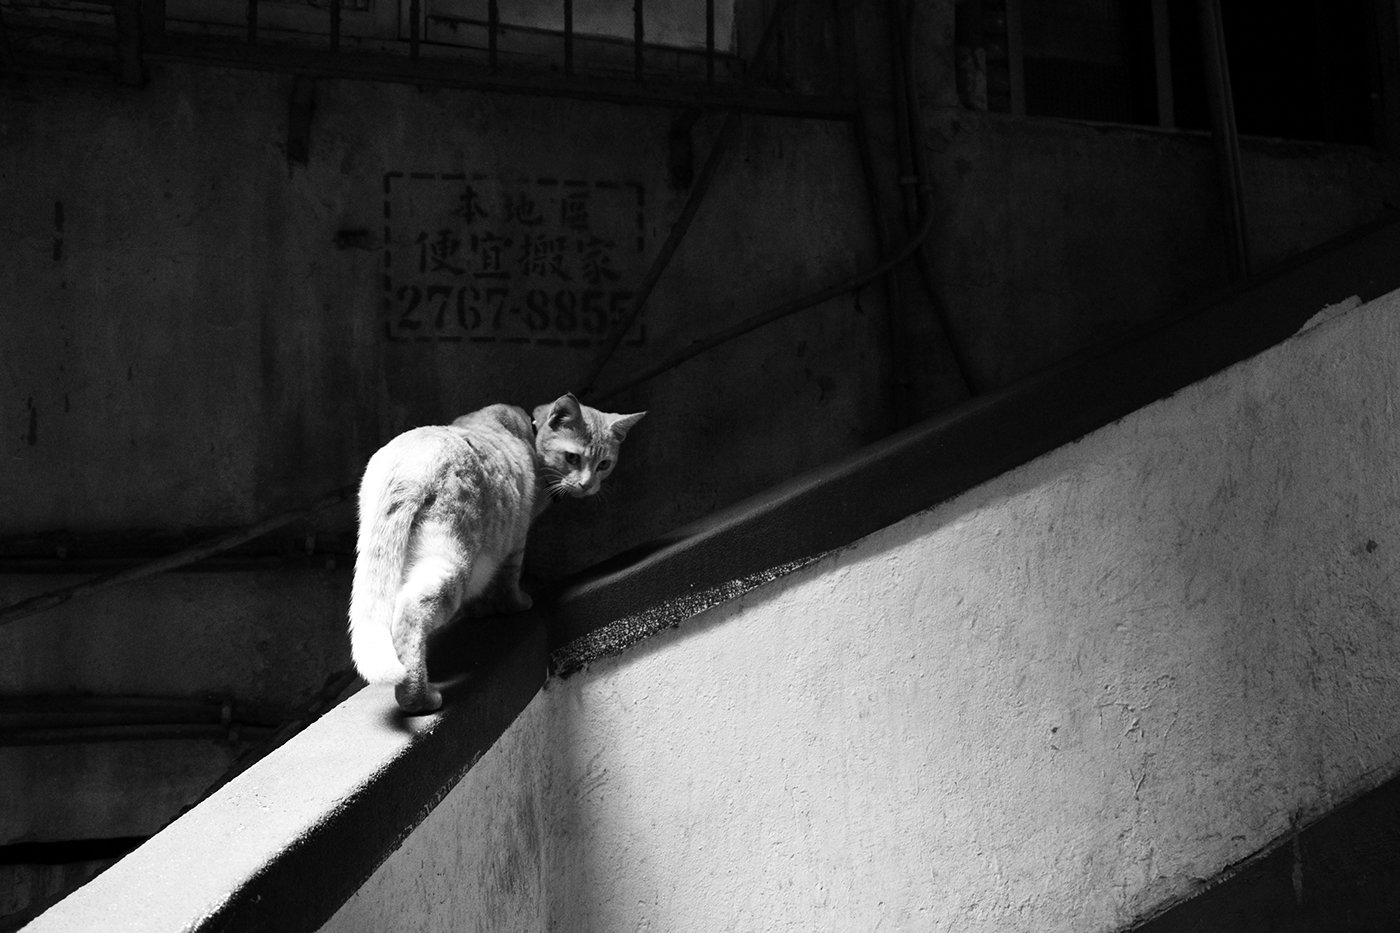 Cat stray life city animal mix photo abandon homeless Outdoor